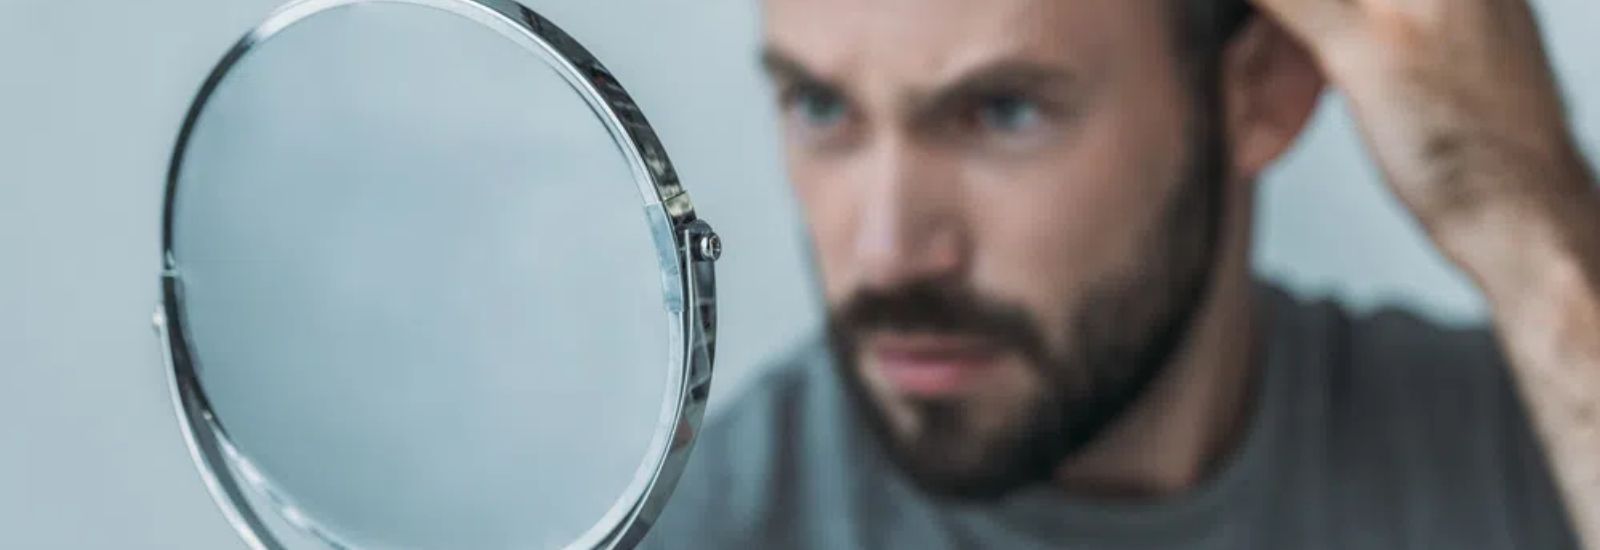 Man looking at mirror